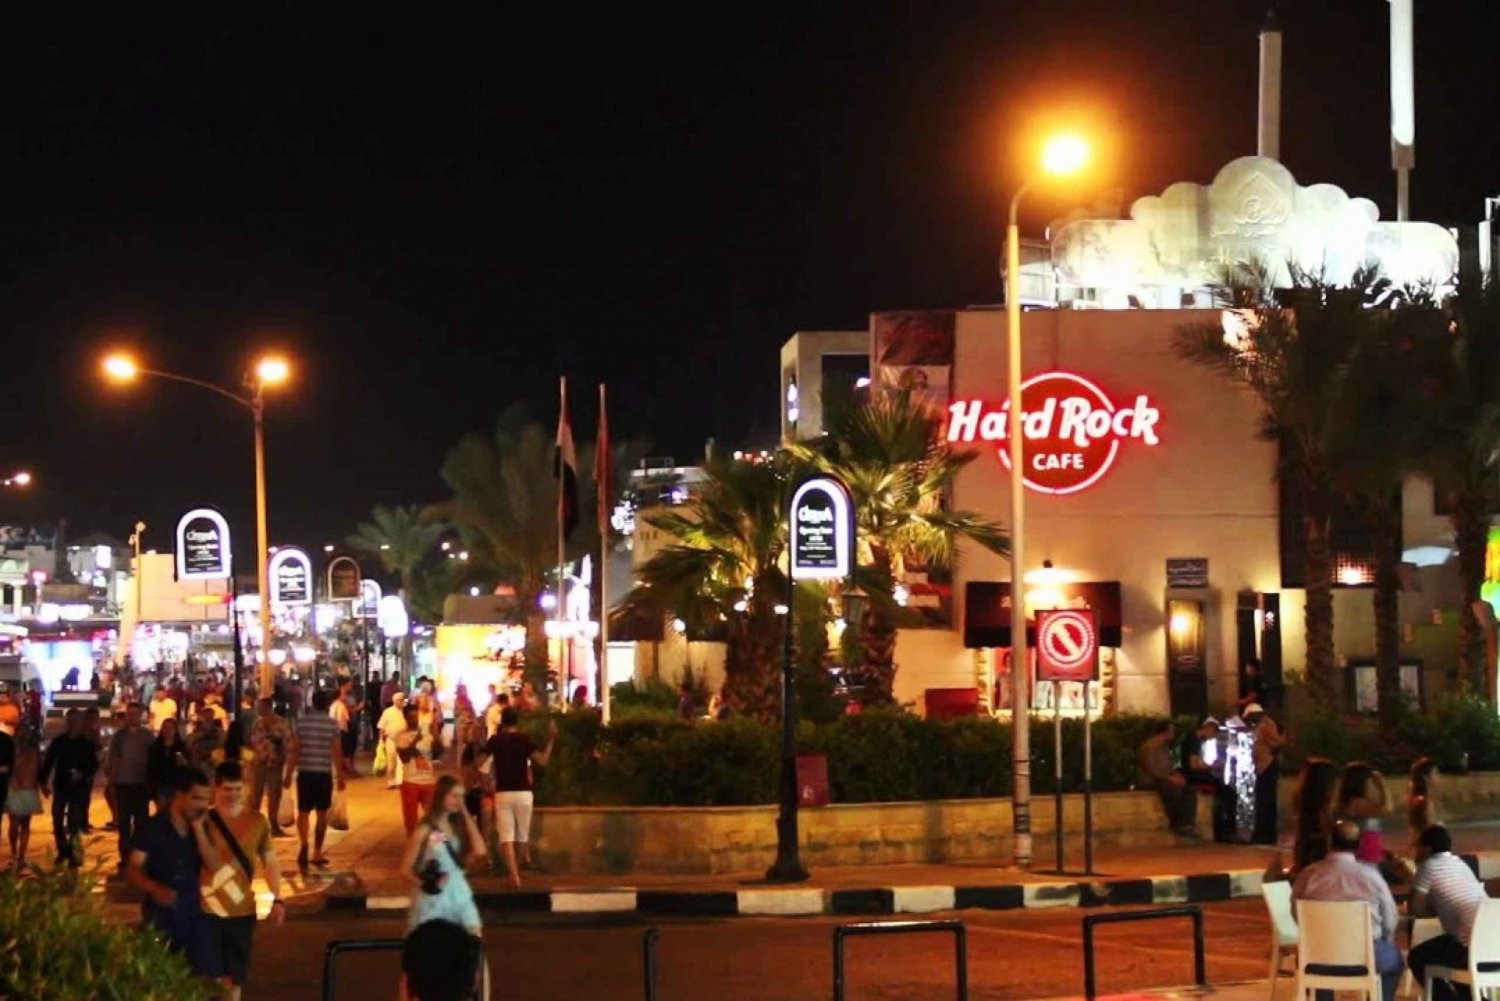 Sharm el-Sheikh: Tur til islamske og koptiske severdigheter med lunsj